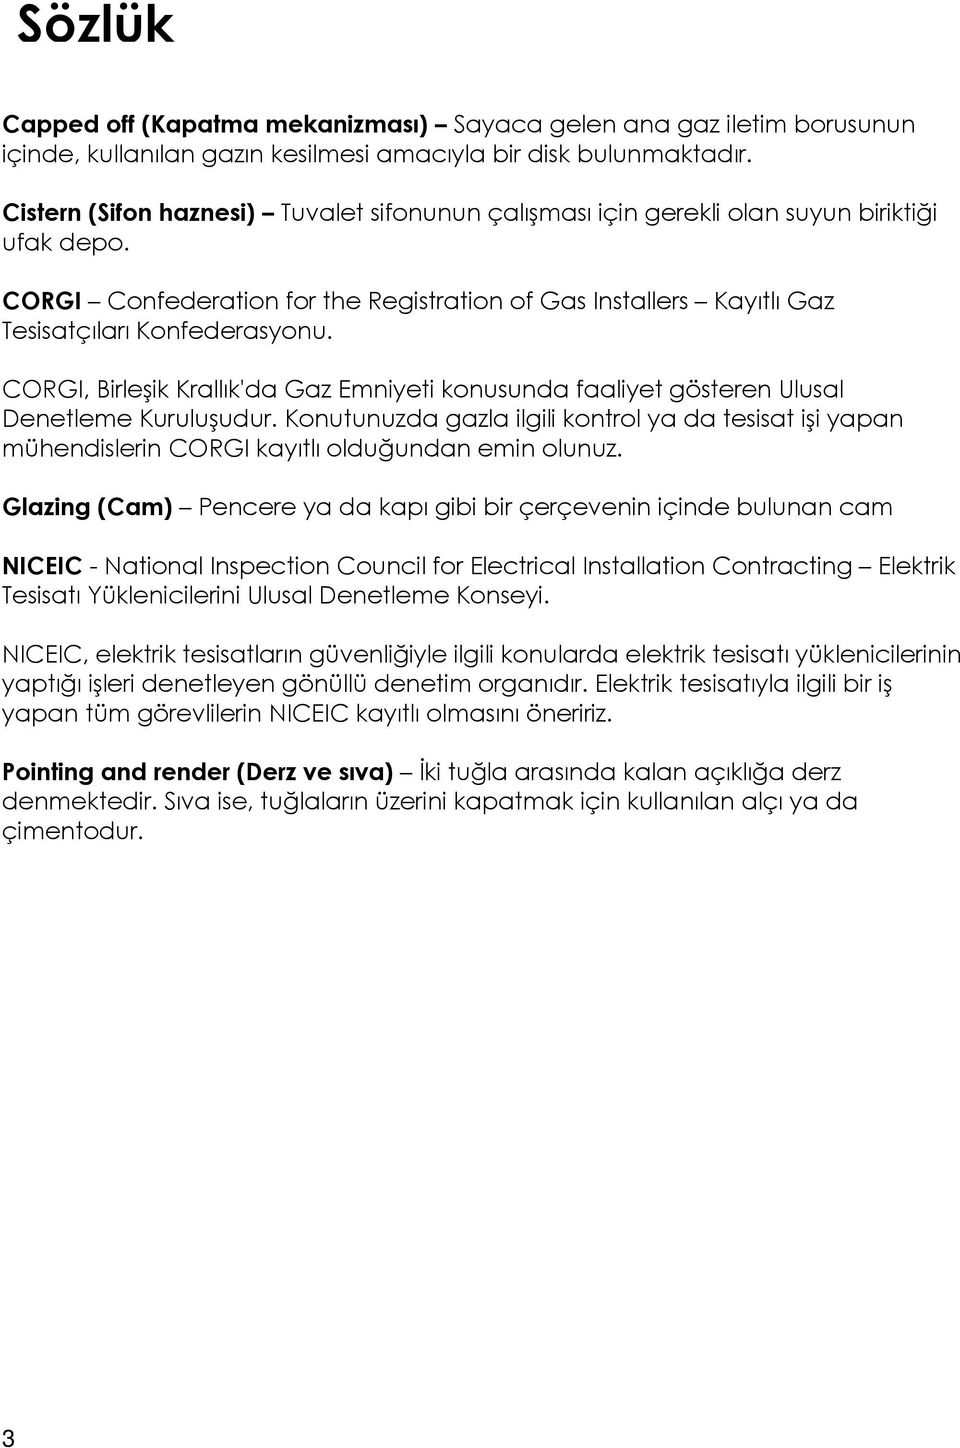 CORGI, Birleşik Krallık'da Gaz Emniyeti konusunda faaliyet gösteren Ulusal Denetleme Kuruluşudur.